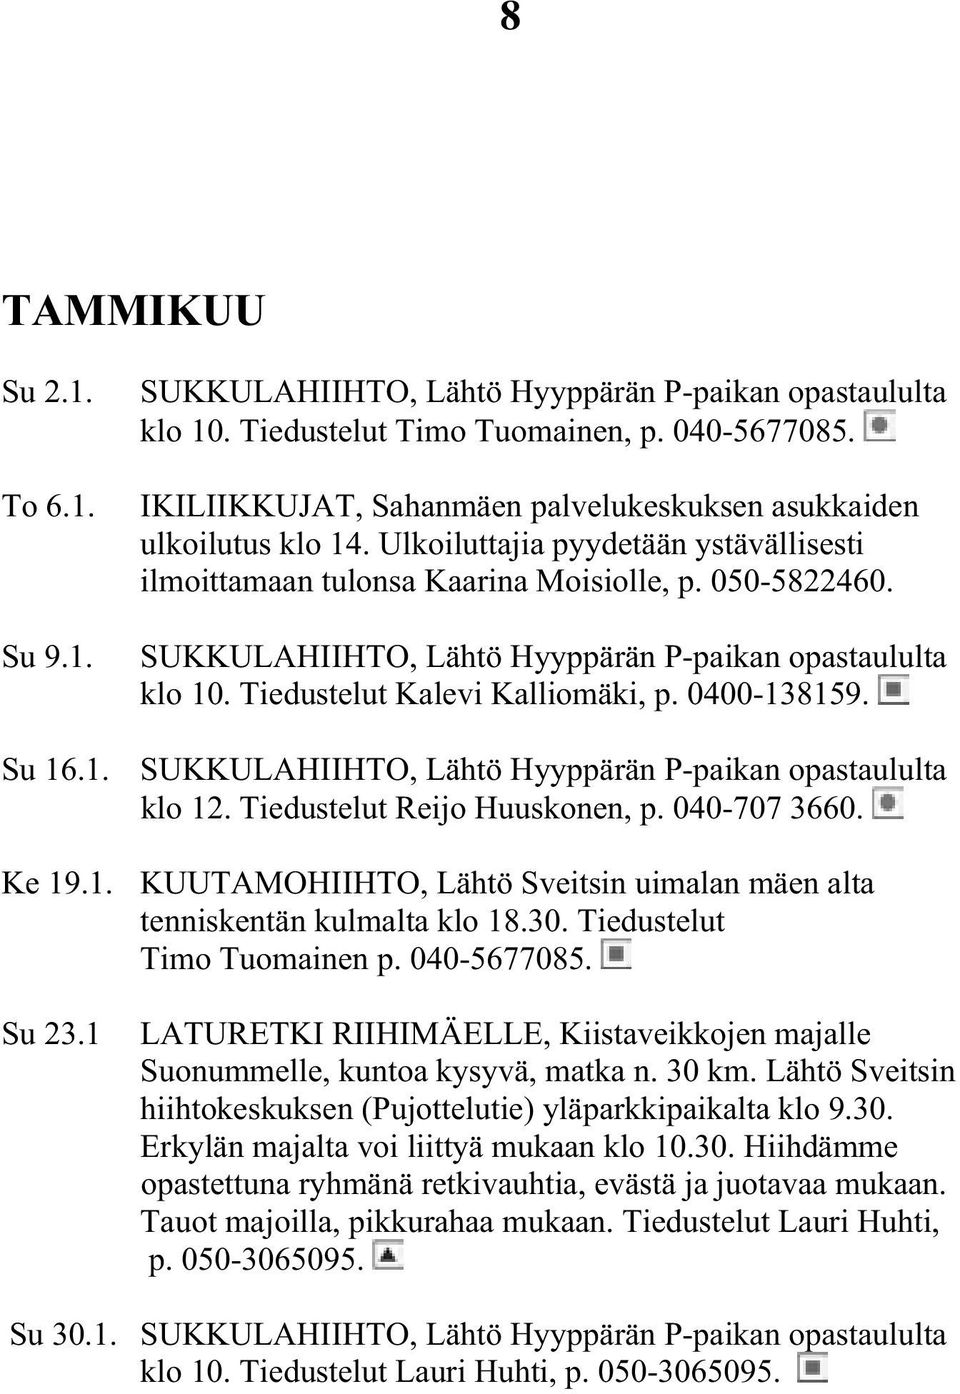 SUKKULAHIIHTO, Lähtö Hyyppärän P-paikan opastaululta klo 10. Tiedustelut Kalevi Kalliomäki, p. 0400-138159. Su 16.1. SUKKULAHIIHTO, Lähtö Hyyppärän P-paikan opastaululta klo 12.